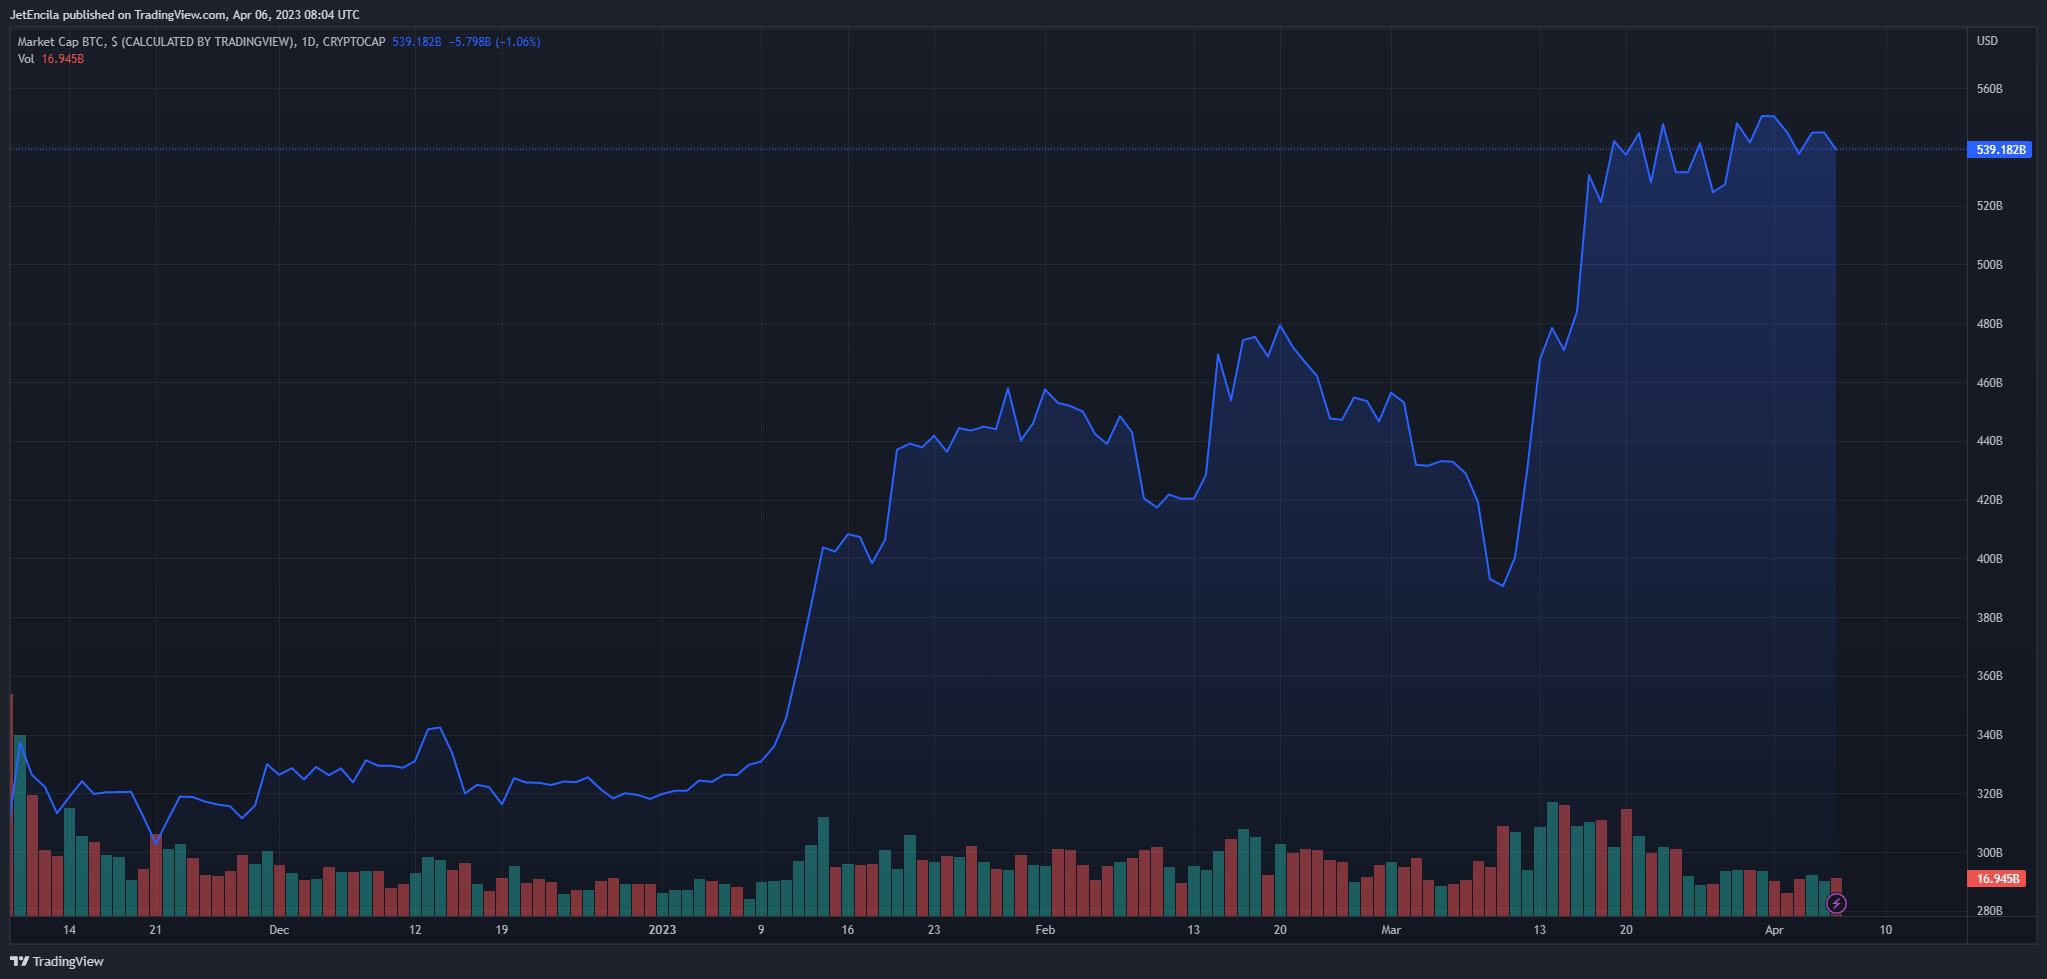 Tổng giá trị vốn hóa thị trường của BTC hiện ở mức 539 tỷ USD trên biểu đồ hàng ngày tại TradingView.com